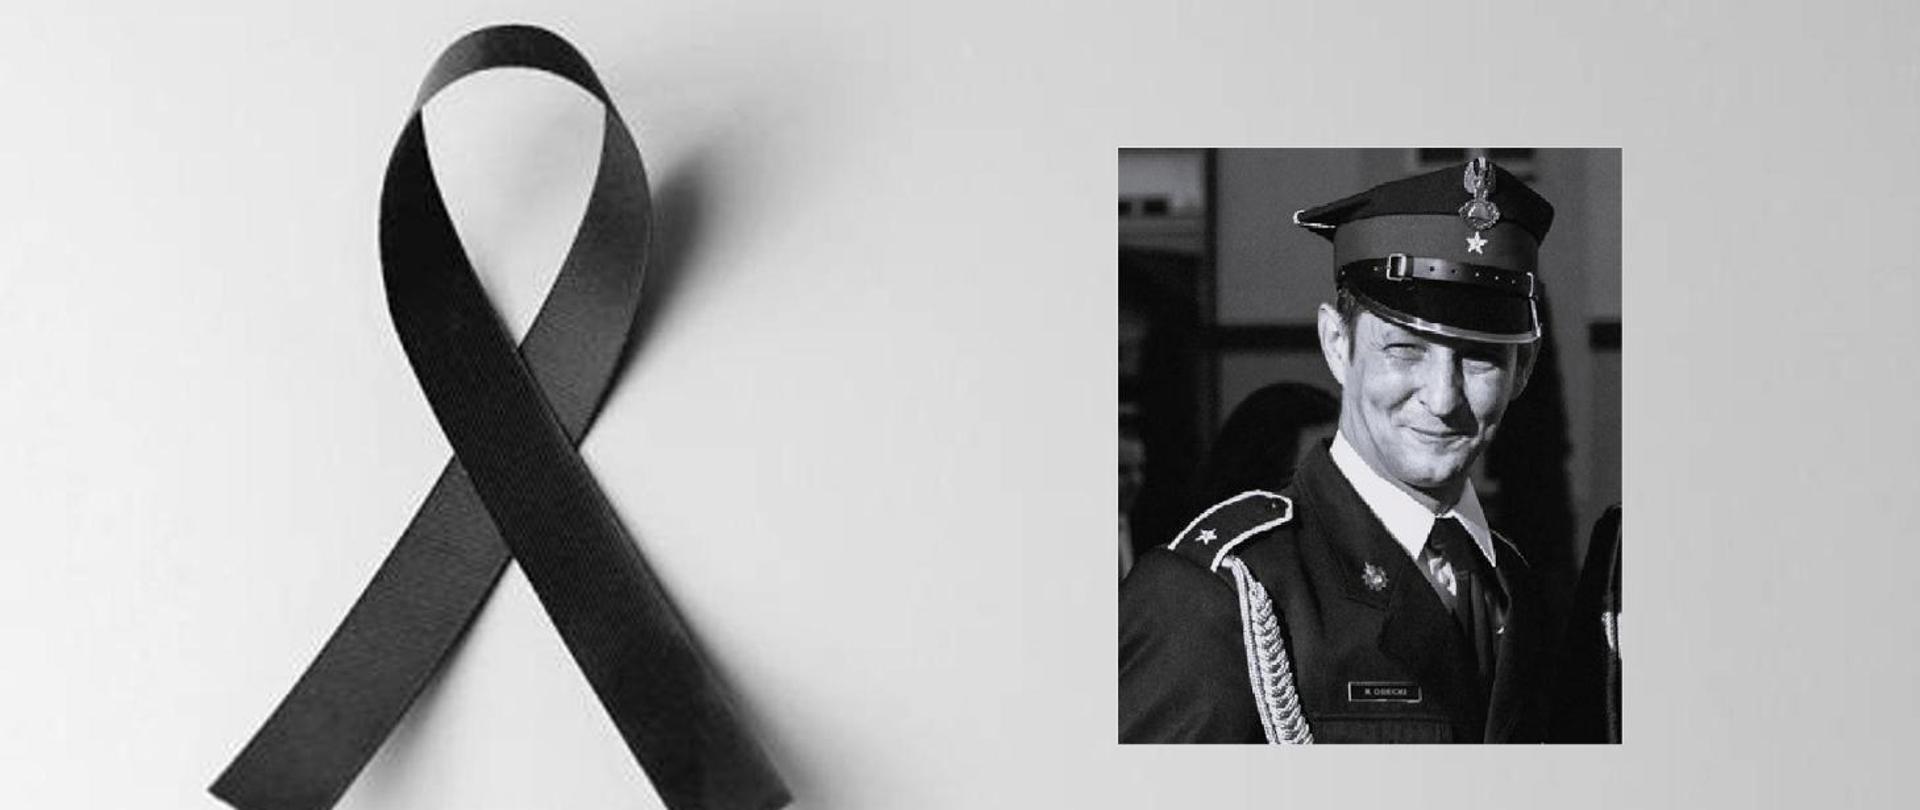 Obraz przedstawia z prawej strony czarno-białe zdjęcie uśmiechającego się śp. asp. Radosława Osieckiego w mundurze wyjściowym ze sznurem. Natomiast z lewej strony widać symbol czarnej wstążki